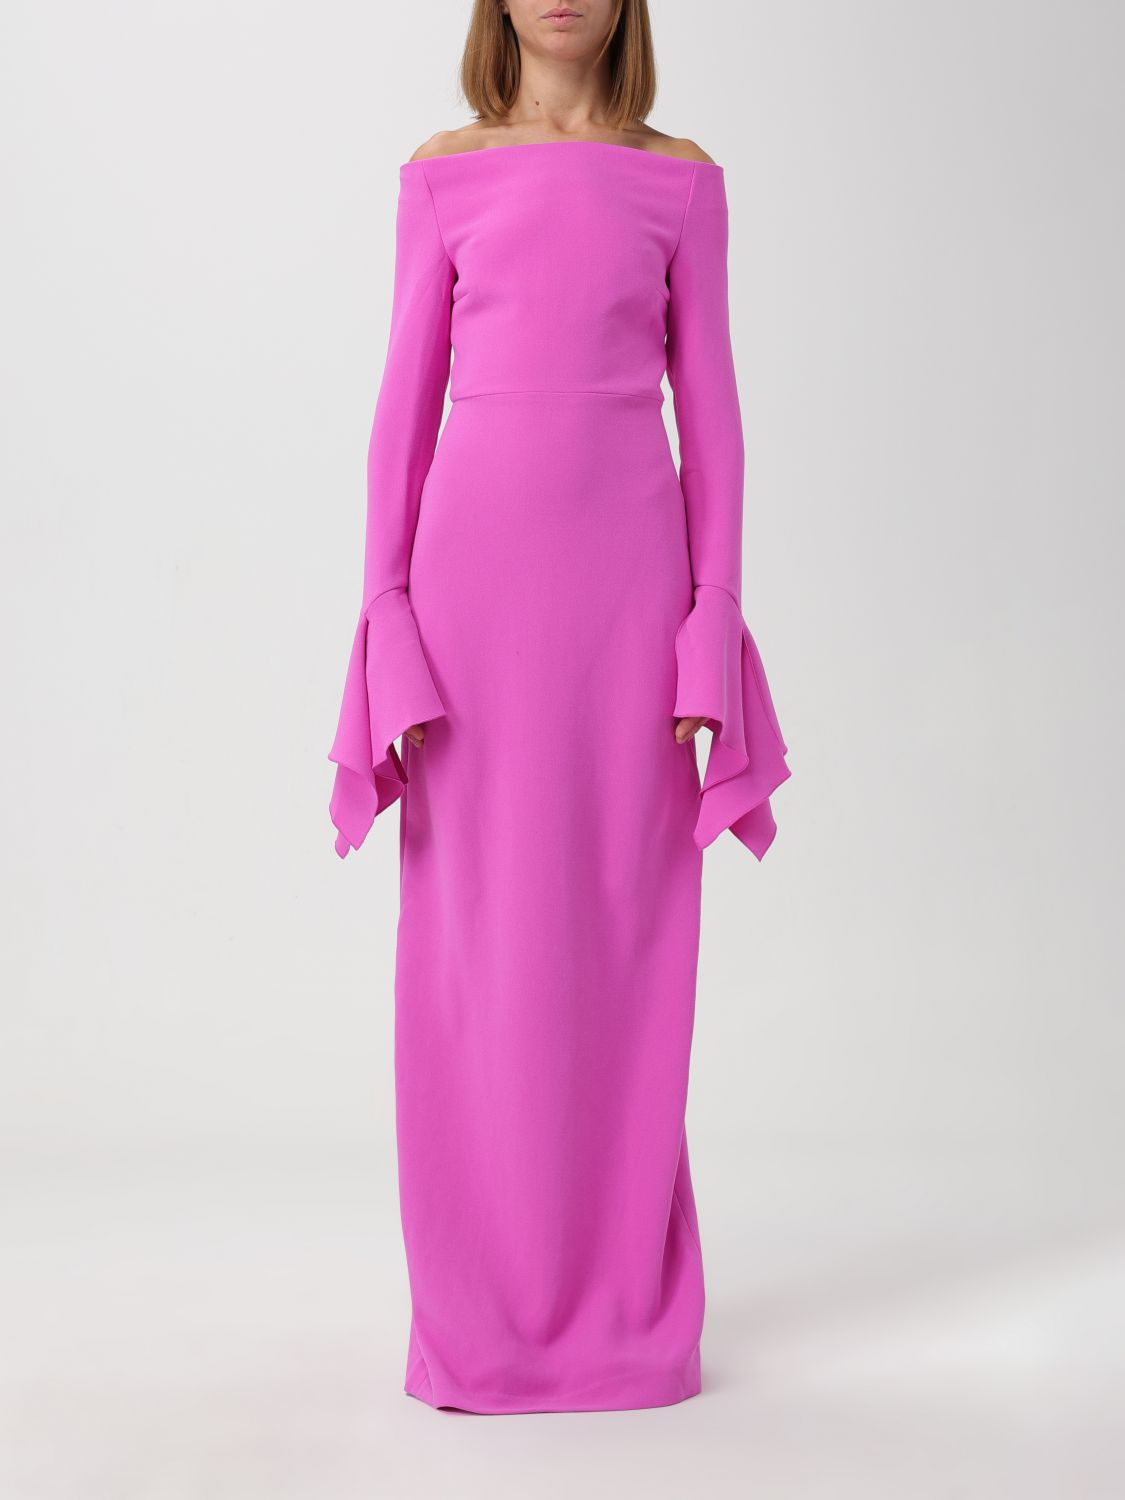 Solace London Dress Woman Pink Woman